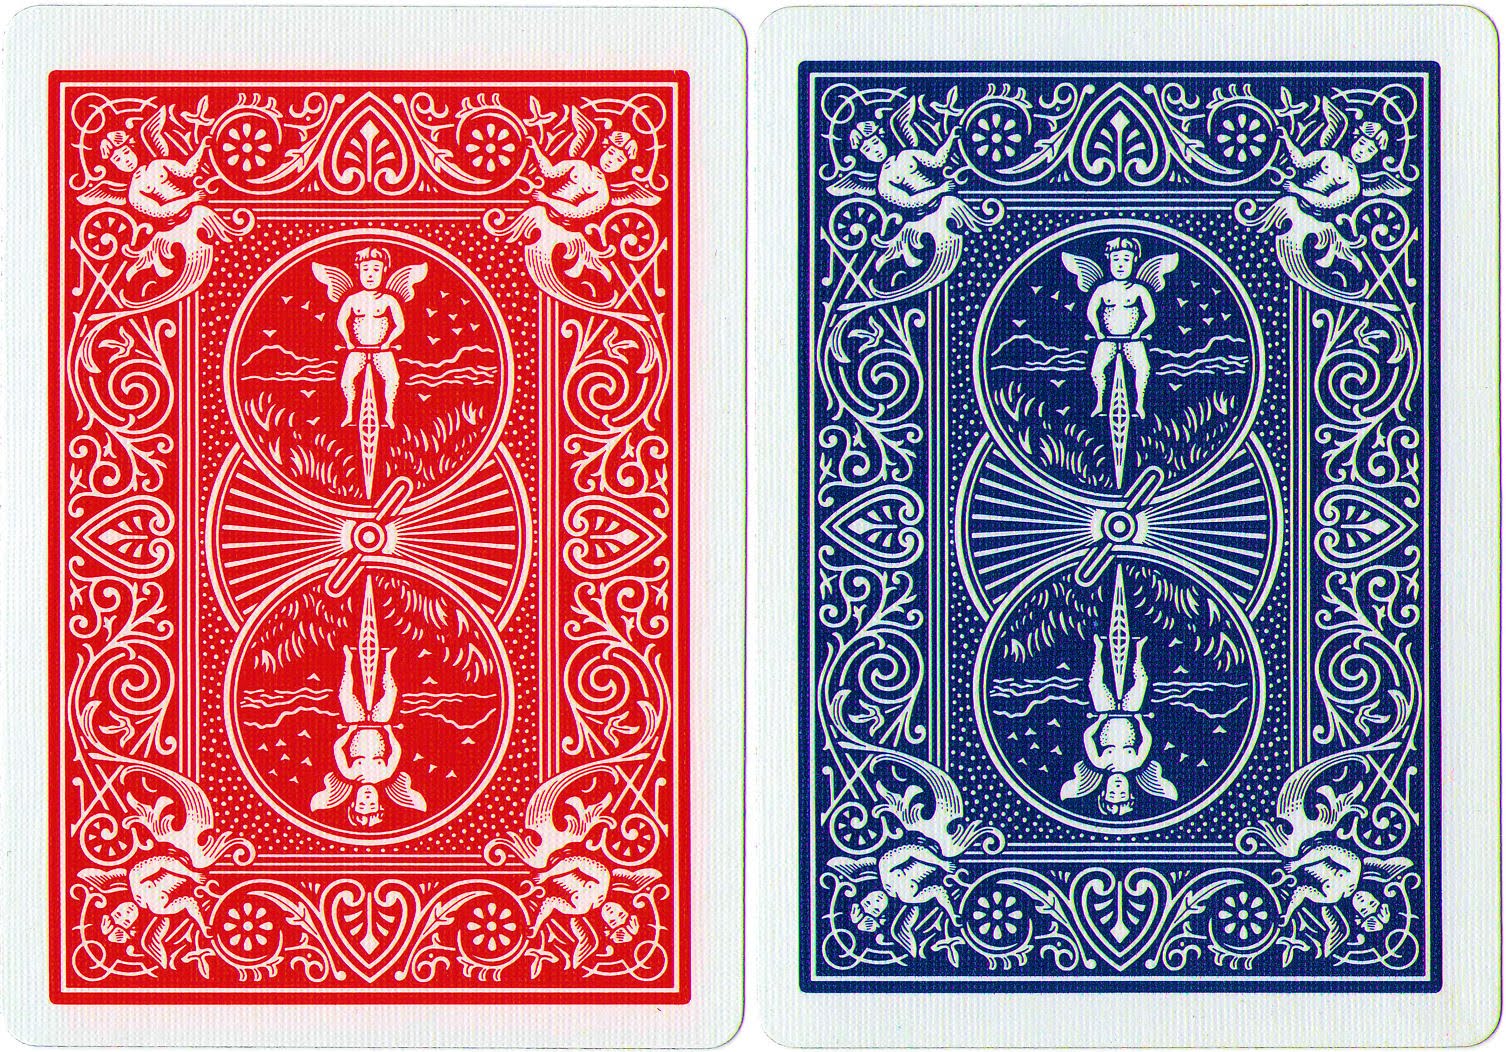 46+] Bicycle Cards Wallpaper - WallpaperSafari